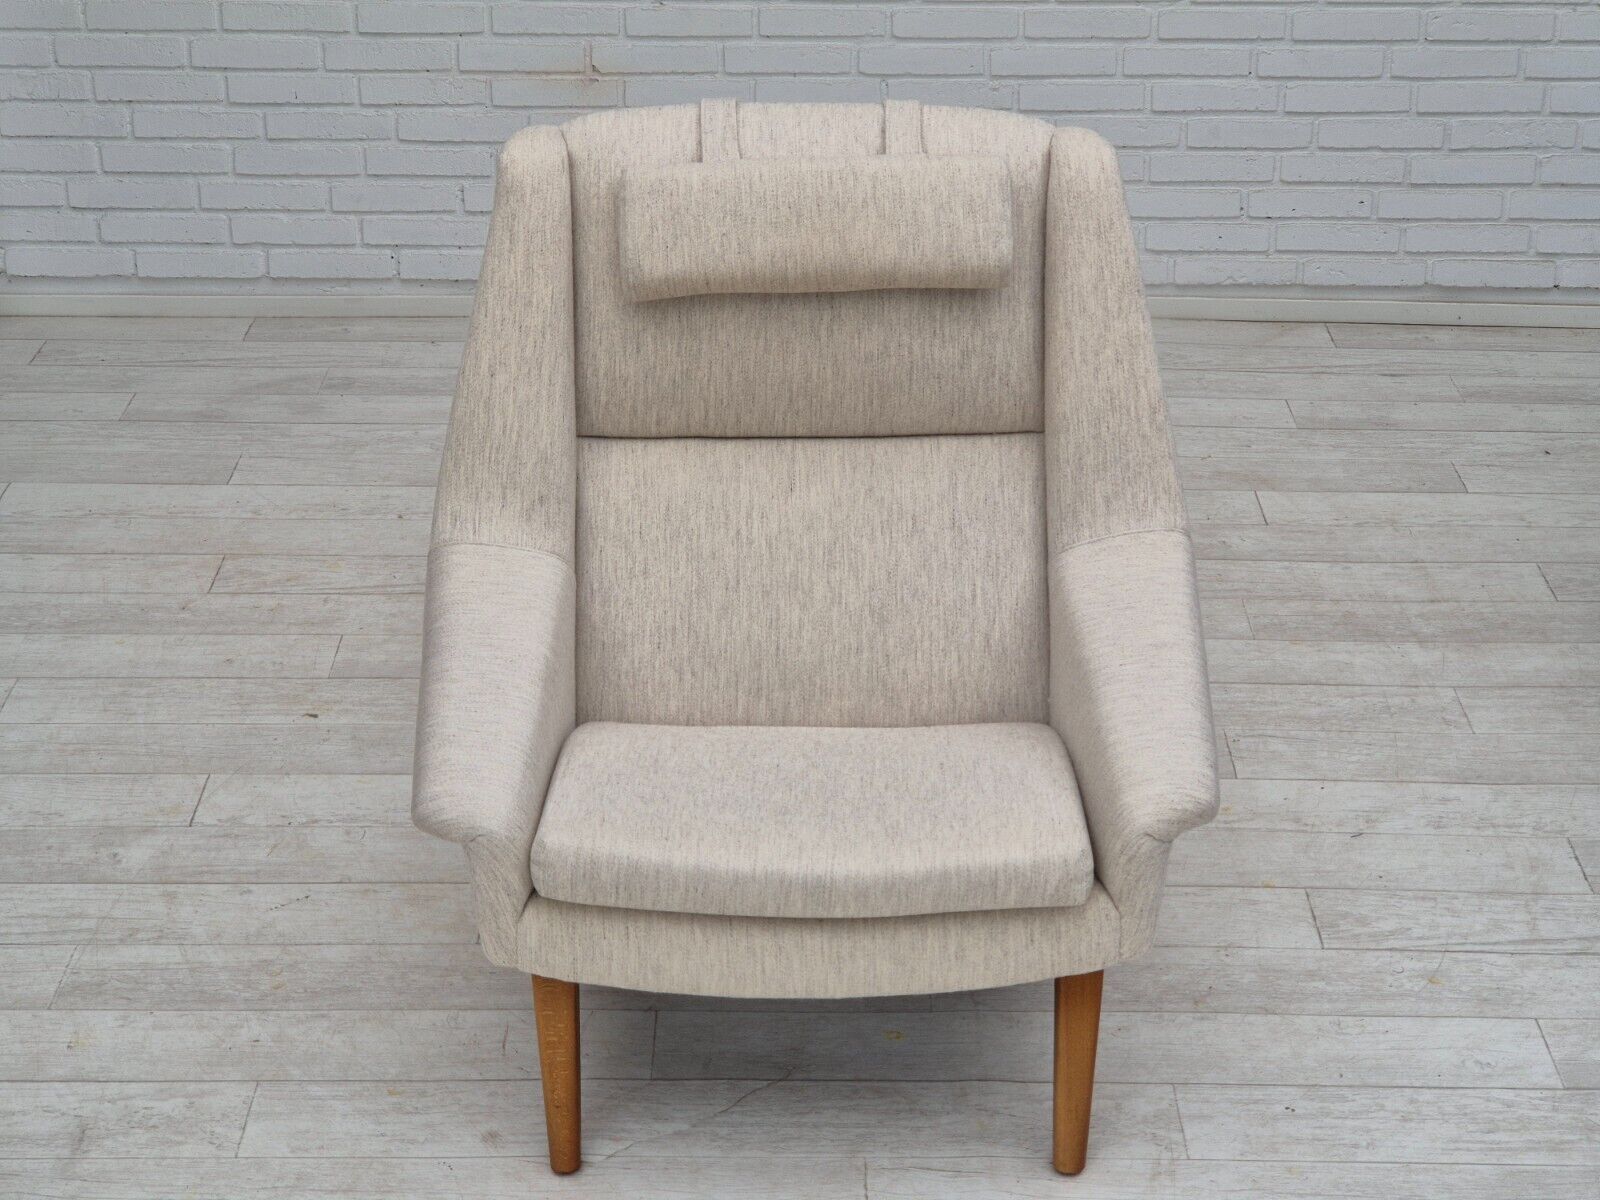 1970s Danish design by Folke Ohlsson chair model 4410 for Fritz Hansen